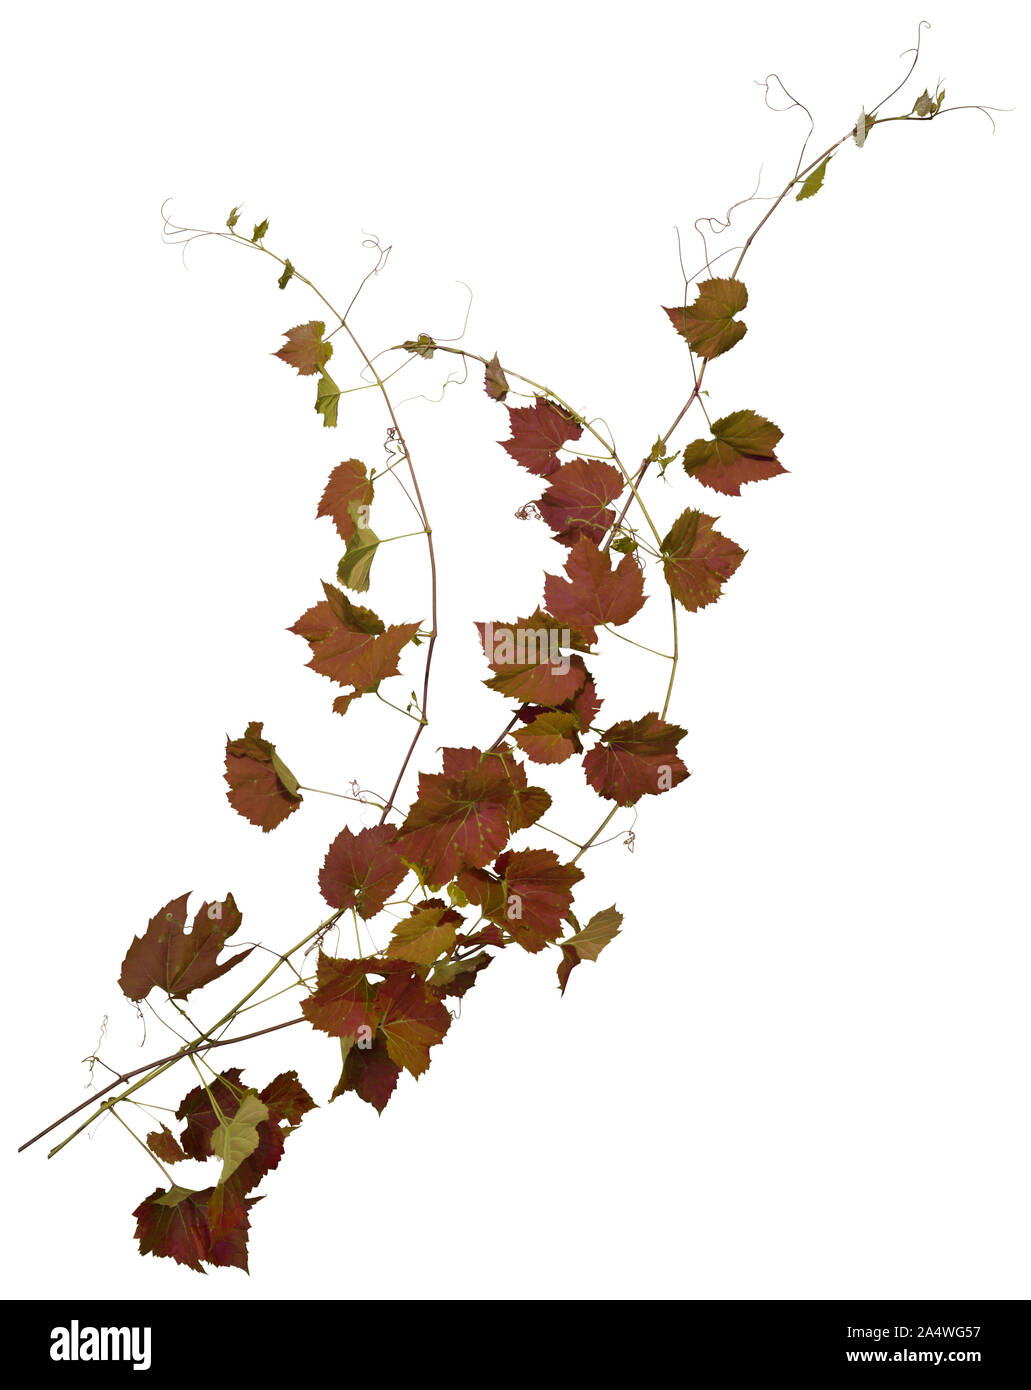 Ivy mit rotem Laub im Herbst. Kletterpflanze auf weißem Hintergrund. Wilden Reben verlässt. Hochwertige Maske für die professionelle Zusammensetzung. Stockfoto